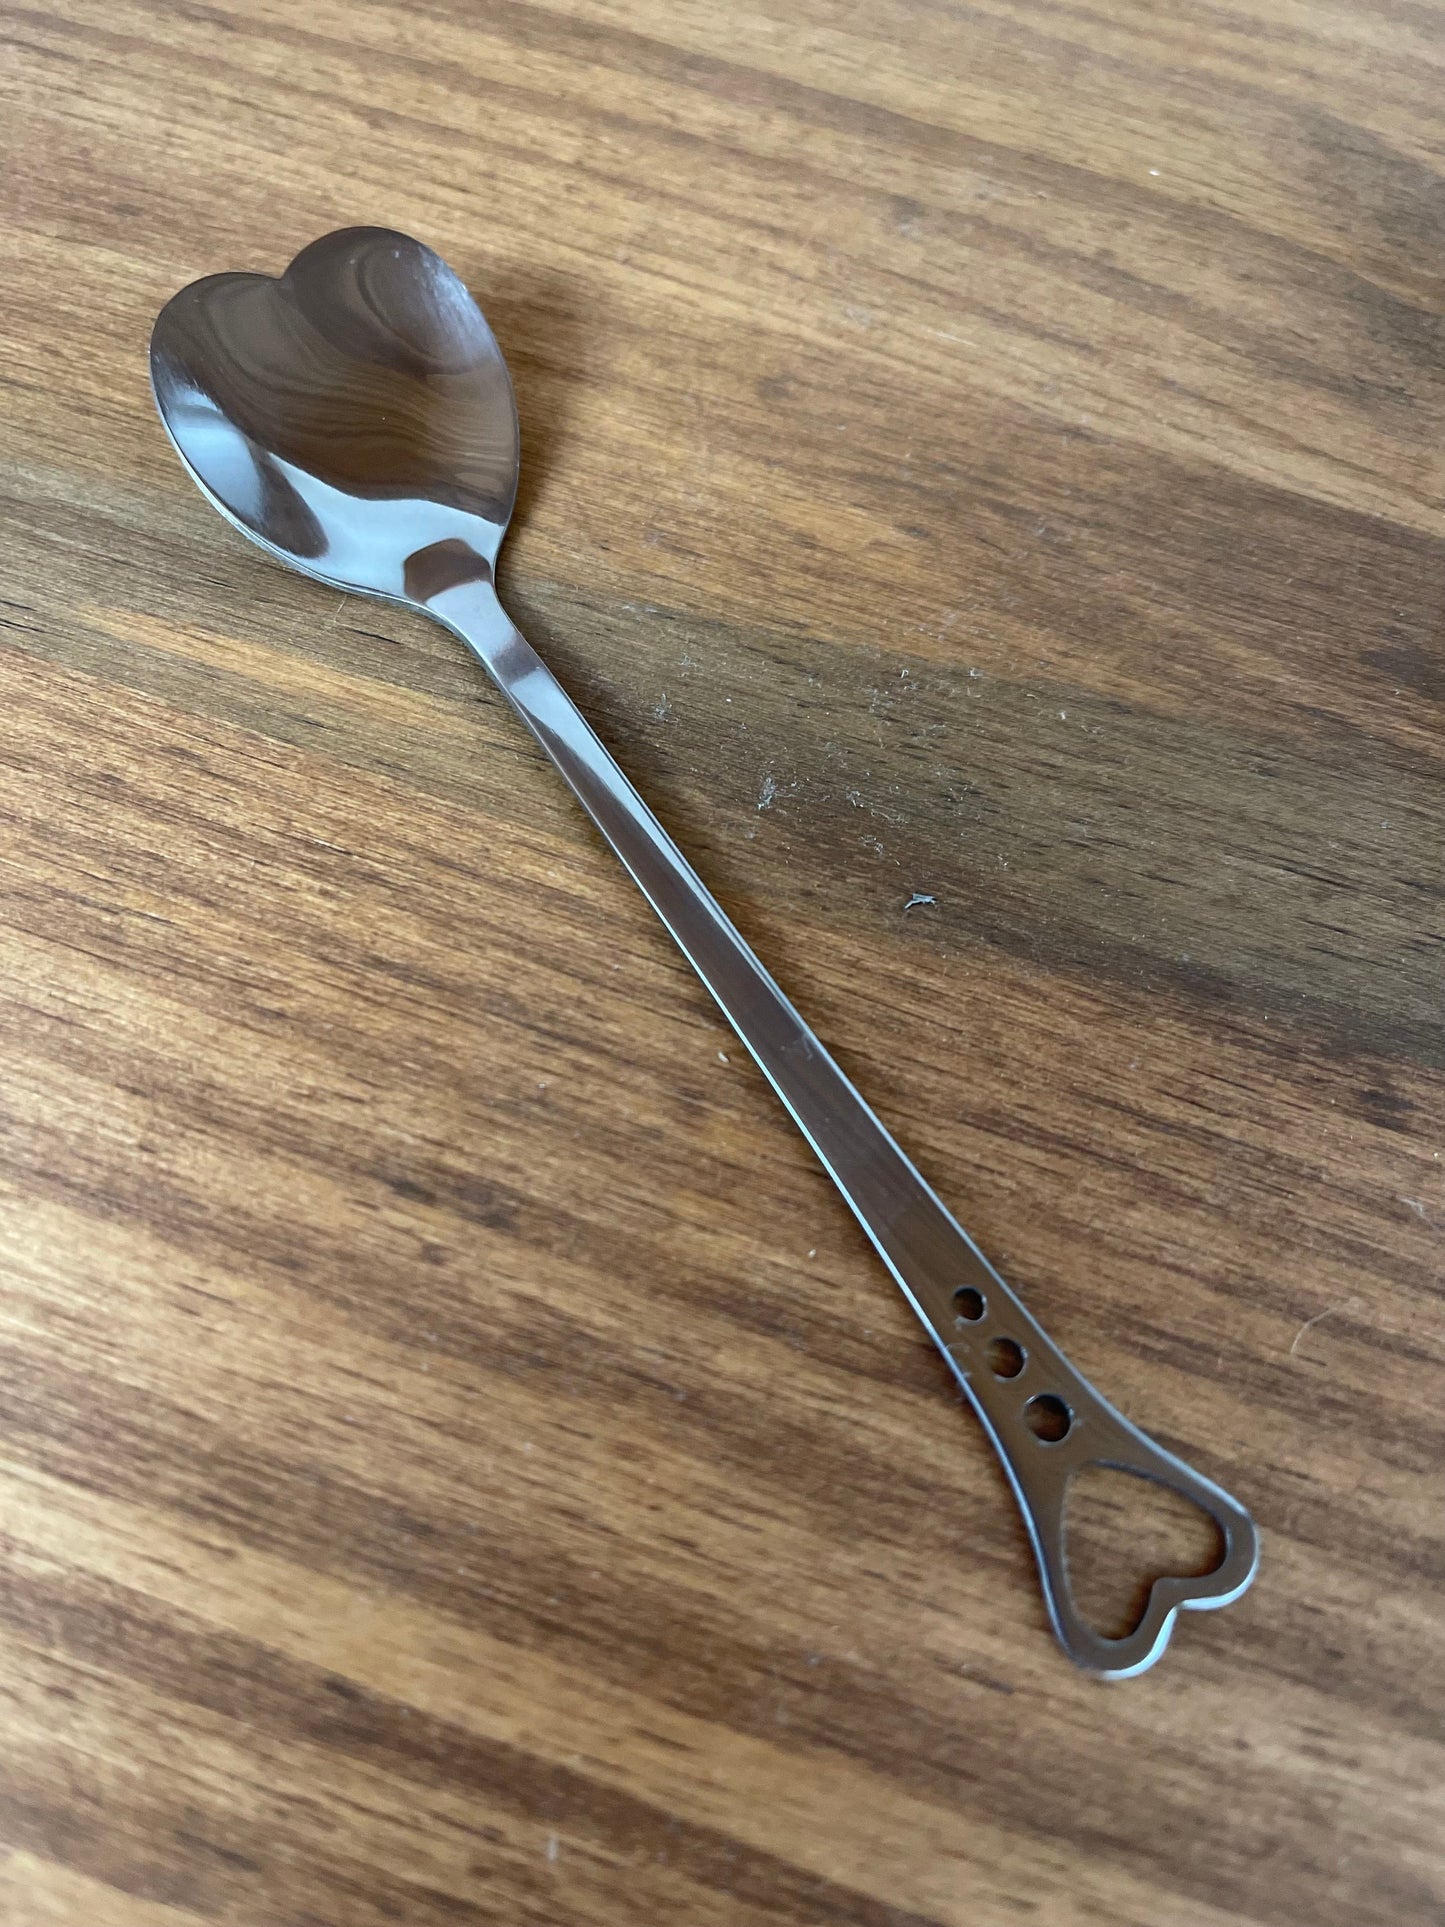 Heart Shaped Spoon